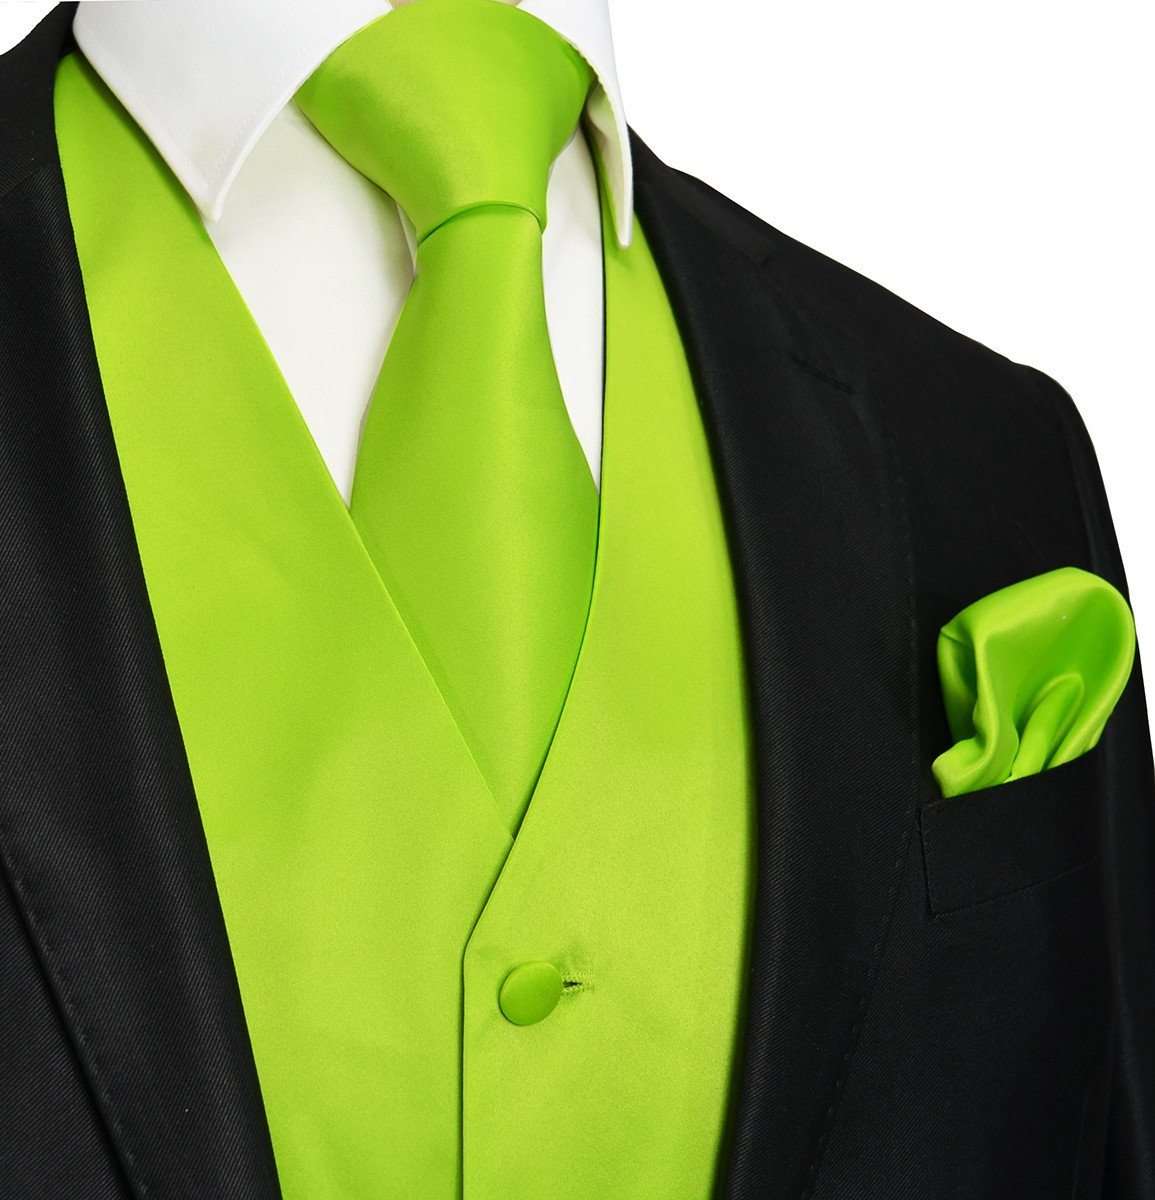 neon green tuxedo